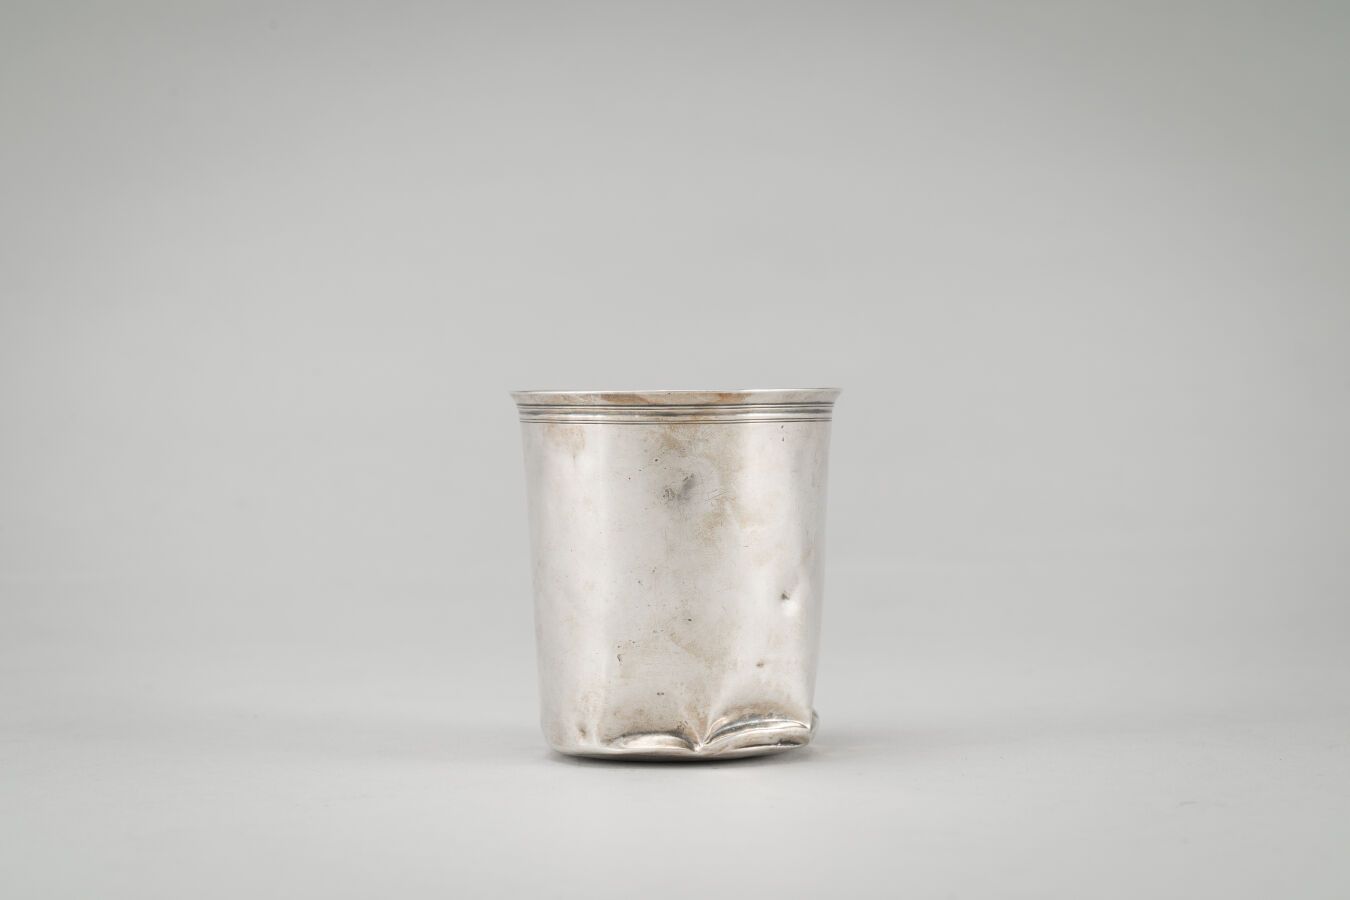 Null 银色水壶（950/1000次），单层。
第二只公鸡，第一个标题，巴黎1809-1819年？
重量：77克。
(凹痕）。
高：8厘米。